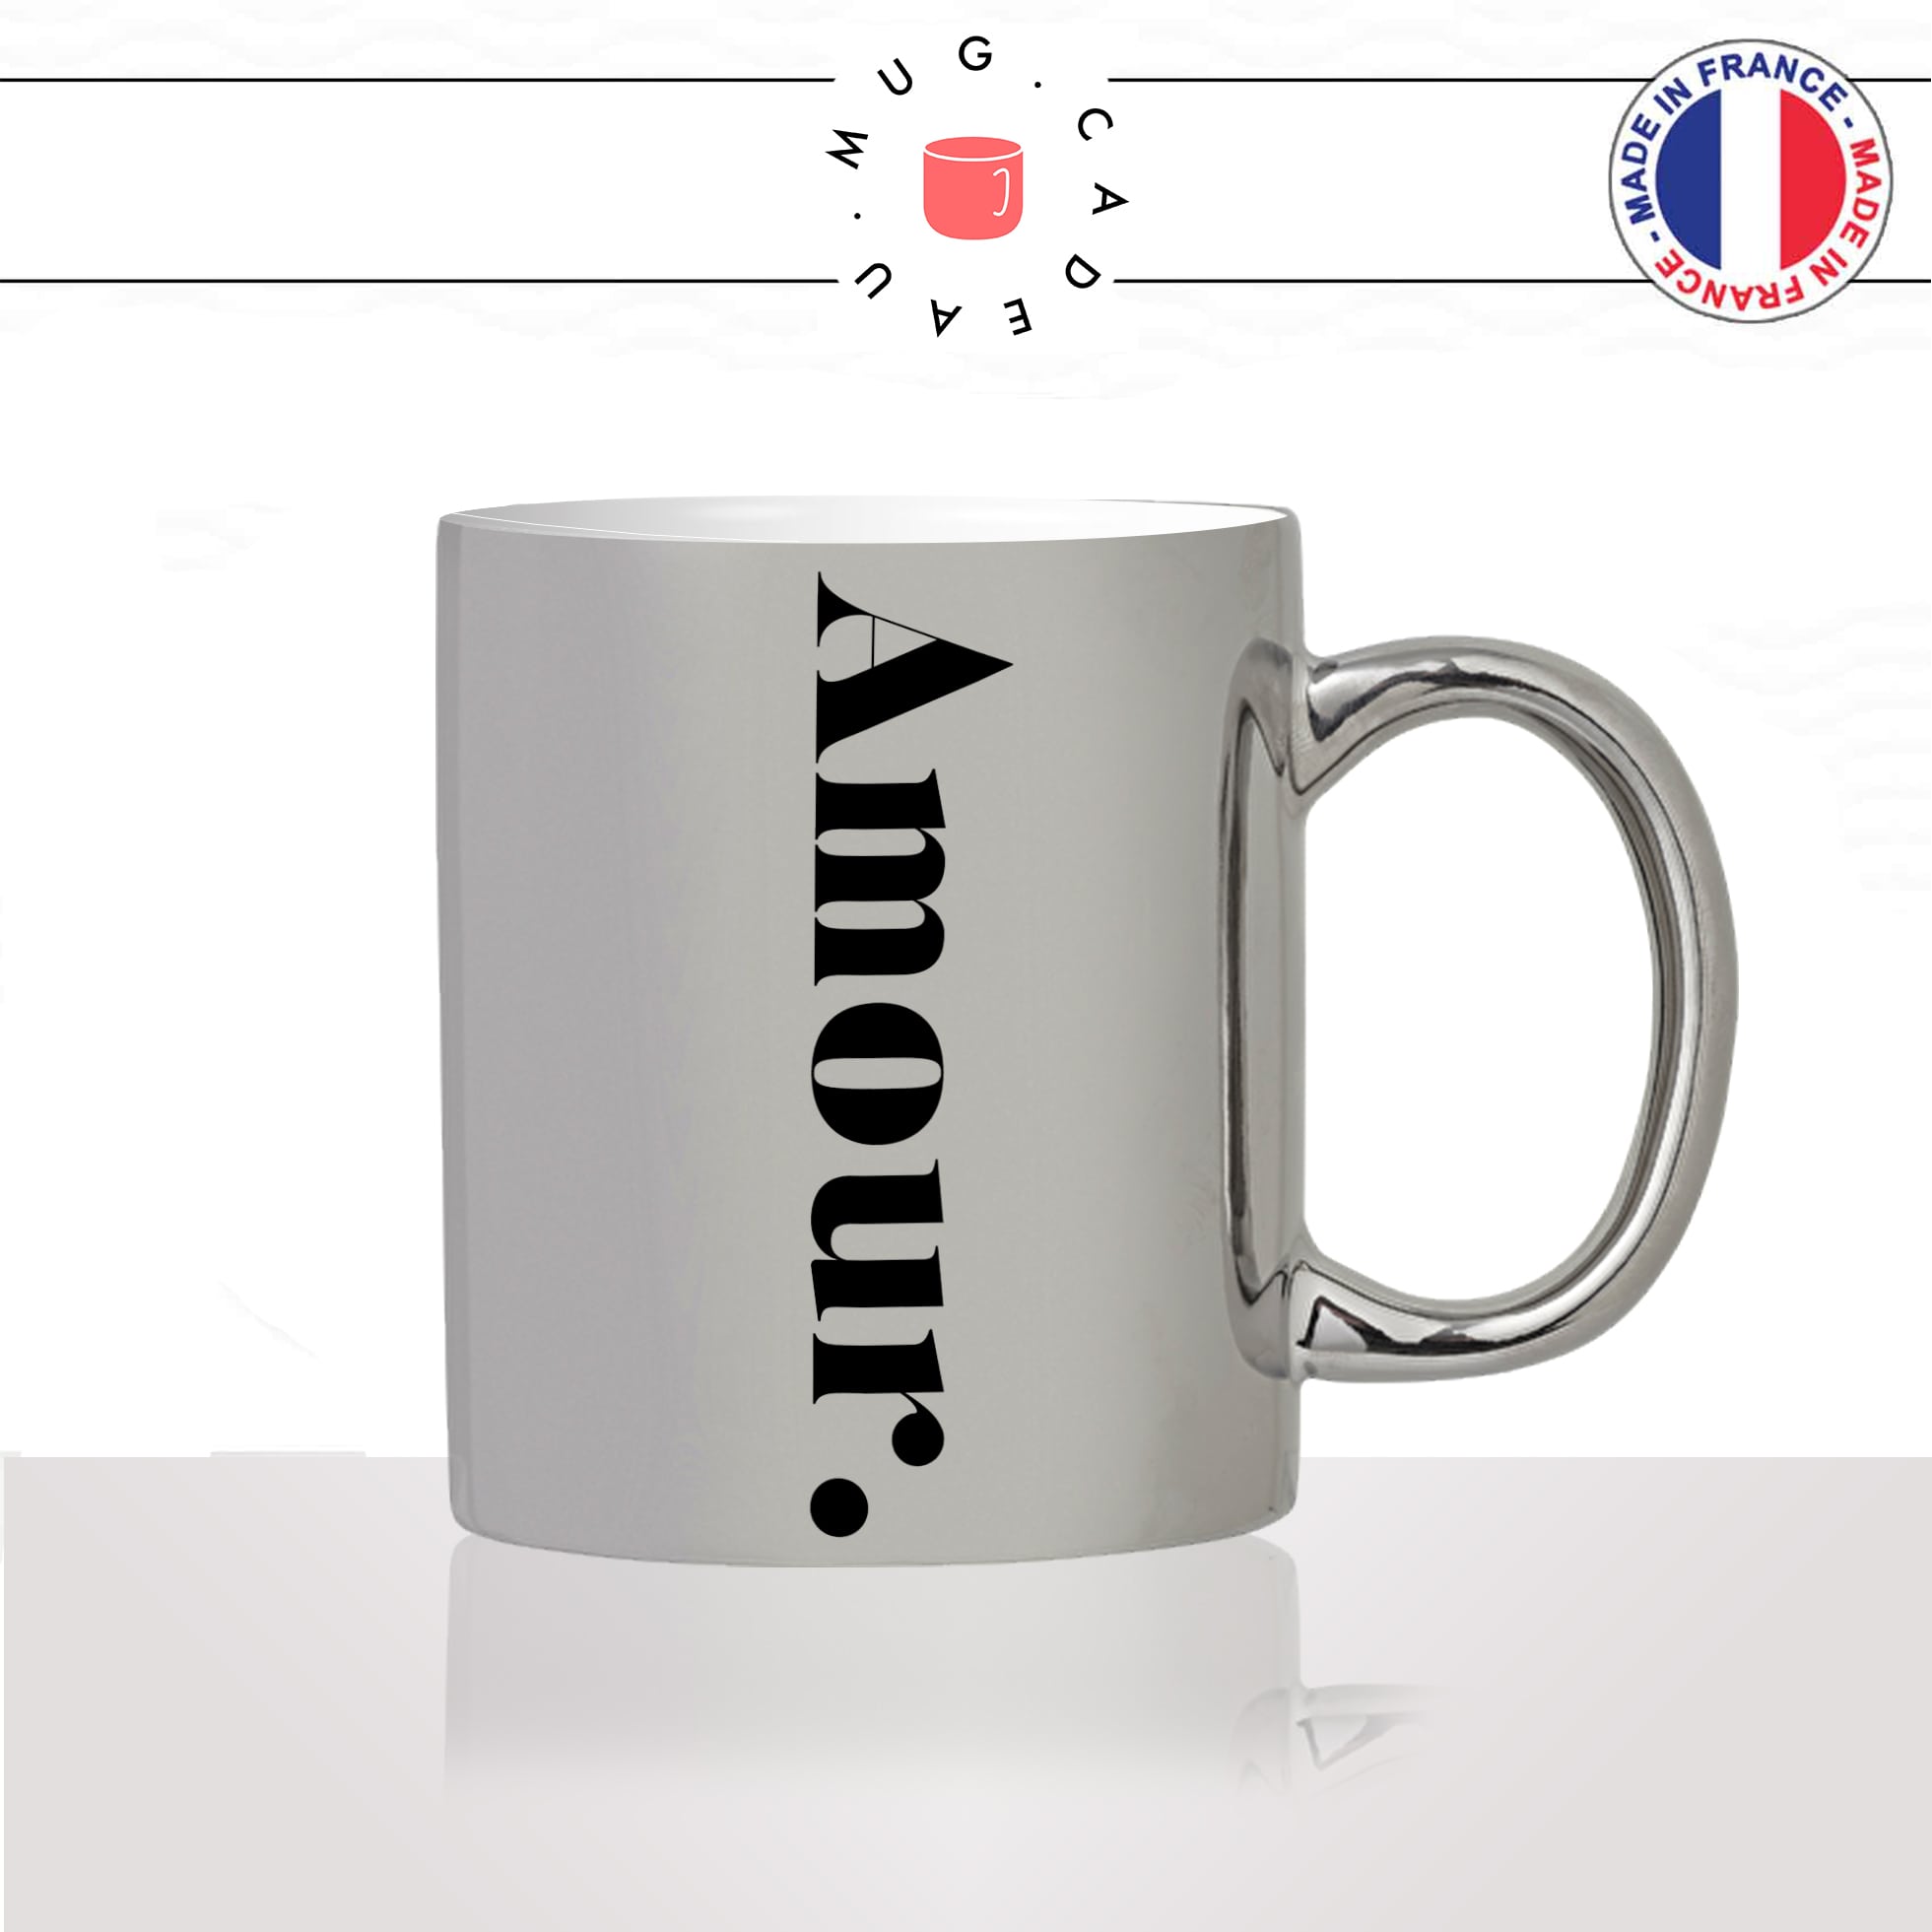 mug-tasse-silver-argenté-amour-calligraphie-lettrine-mot-couple-décoration-saint-valentin-ami-idée-cadeau-originale-personnalisé-café-thé2-min